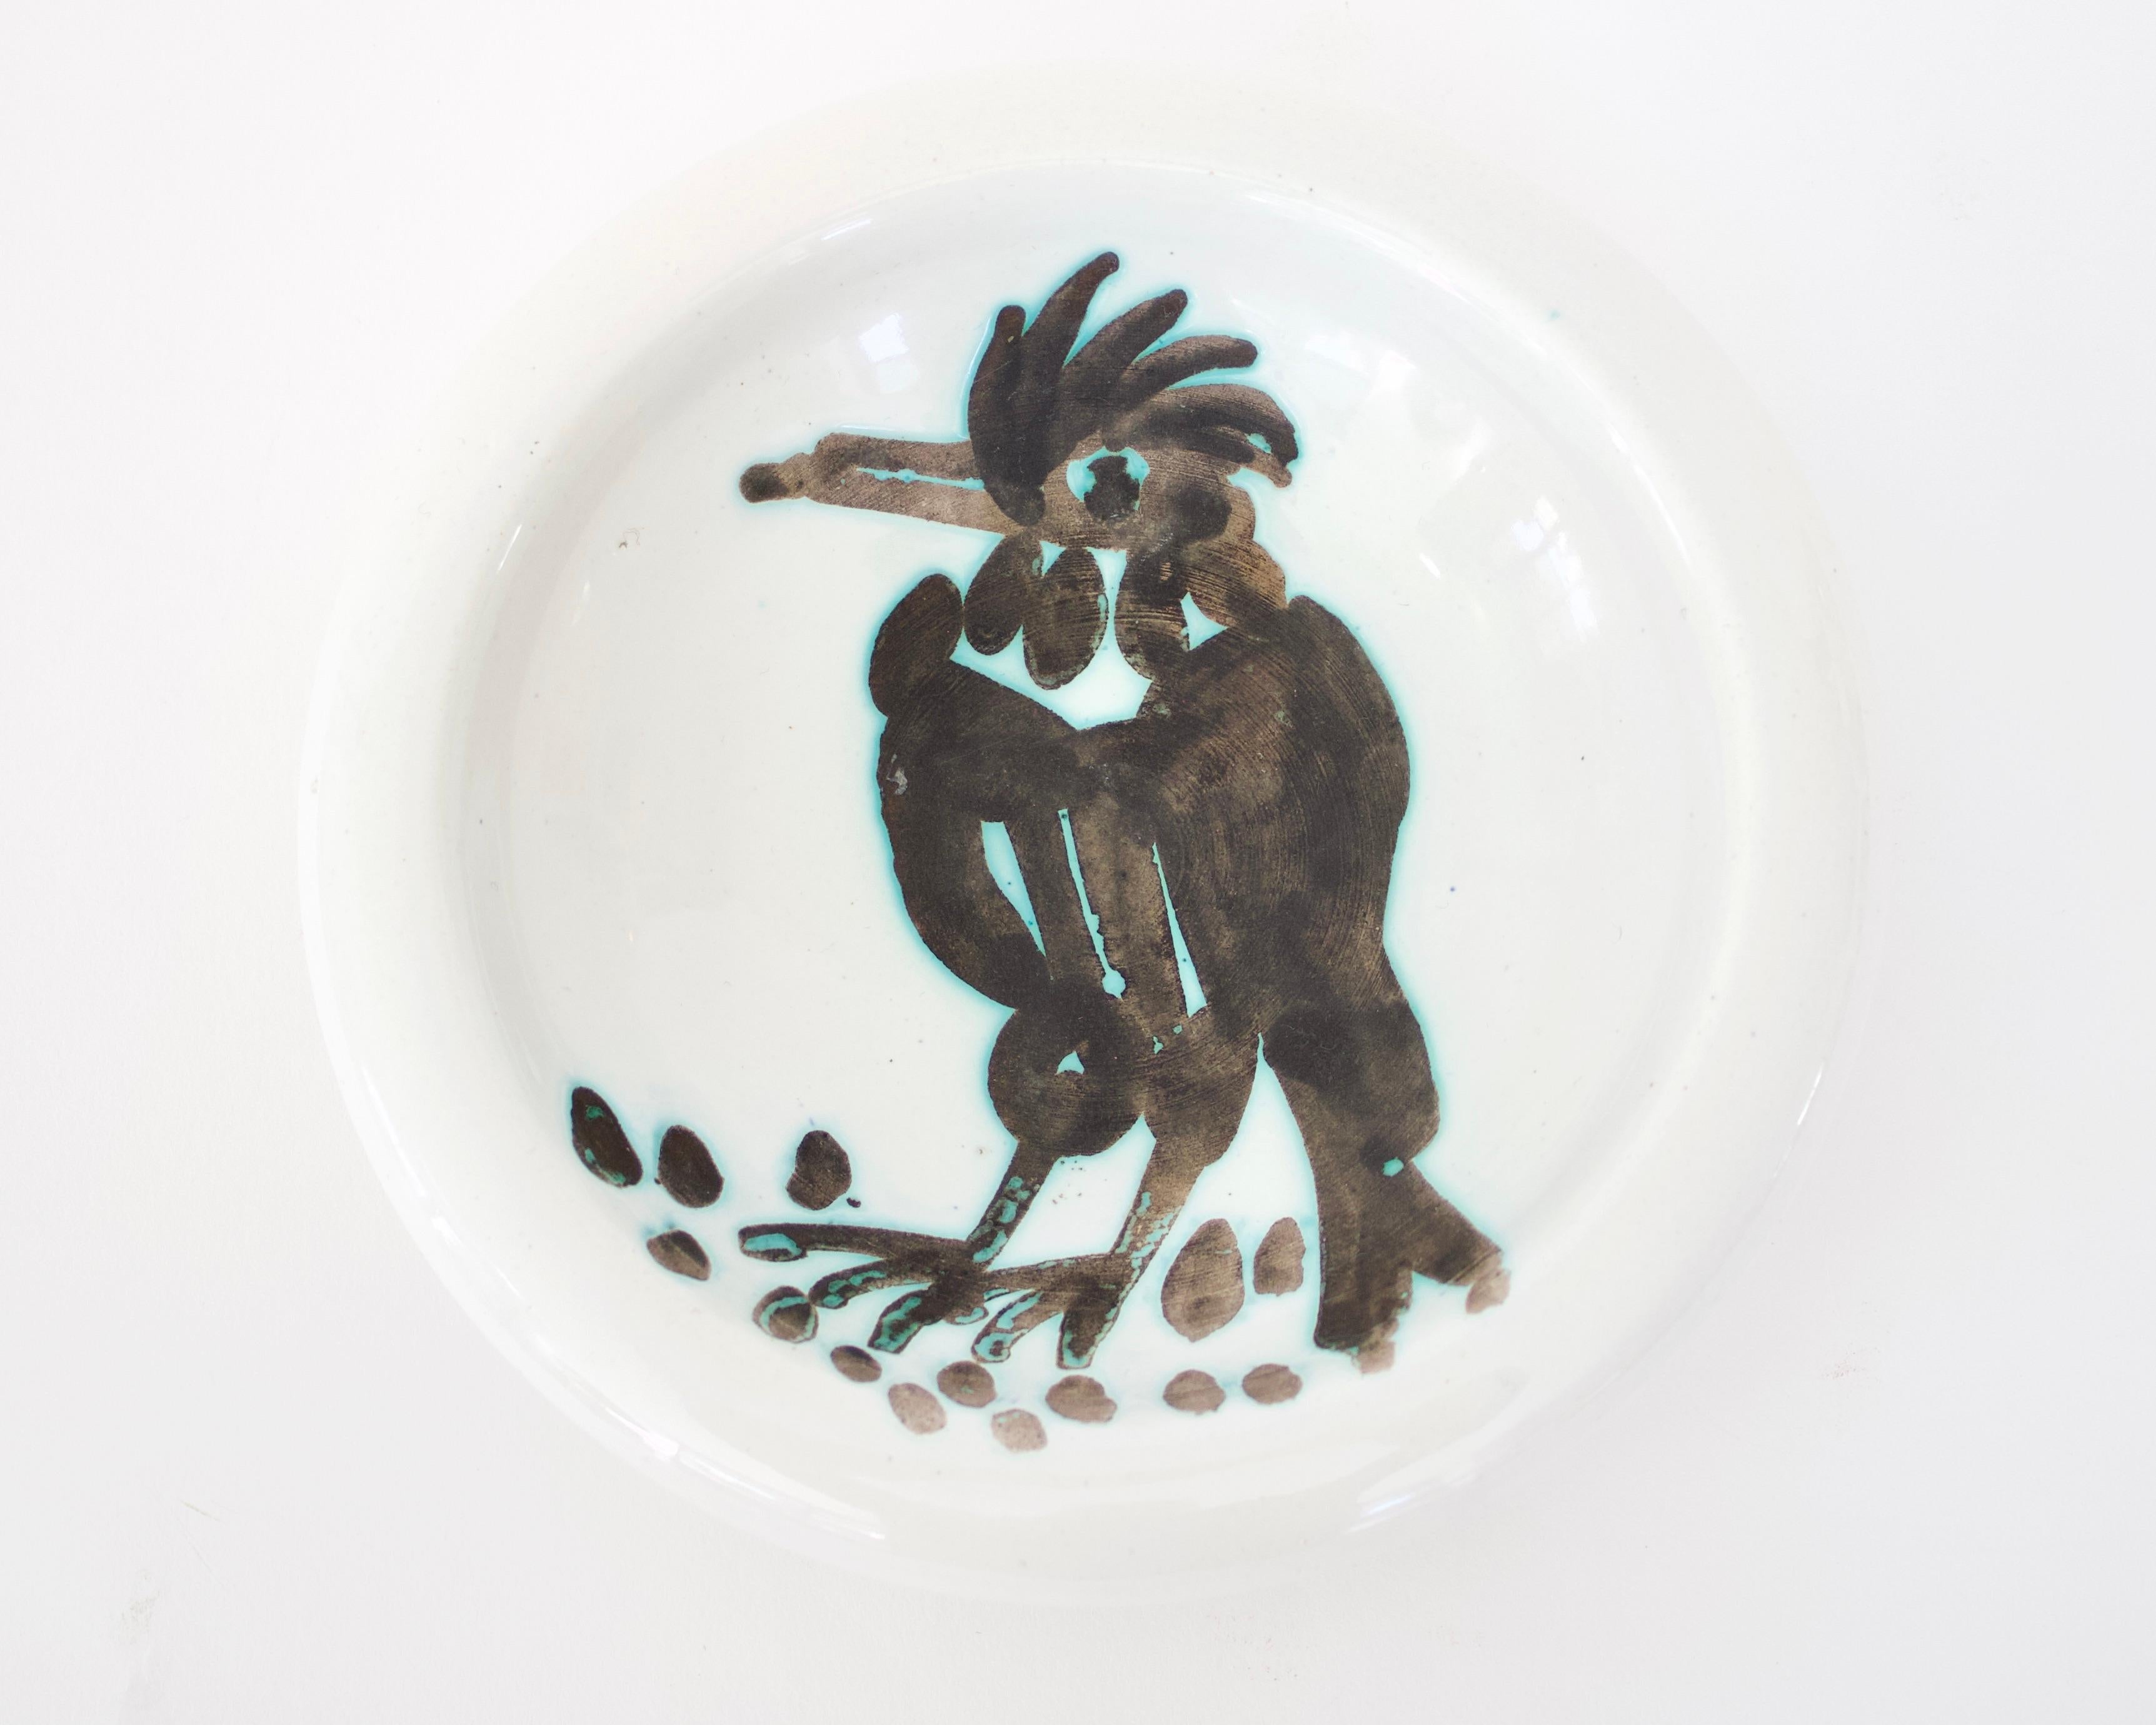 Pablo Picasso Oiseau Teller Vogel mit Büschel, Editionen Picasso Madoura Frankreich. ca. 1952. 14 hatte Pinselstriche unter den Füßen des Vogels gemalt, die auf Nahrung hinweisen. 
Auf der Unterseite mit Madoura Plein Feu edition Picasso und auch